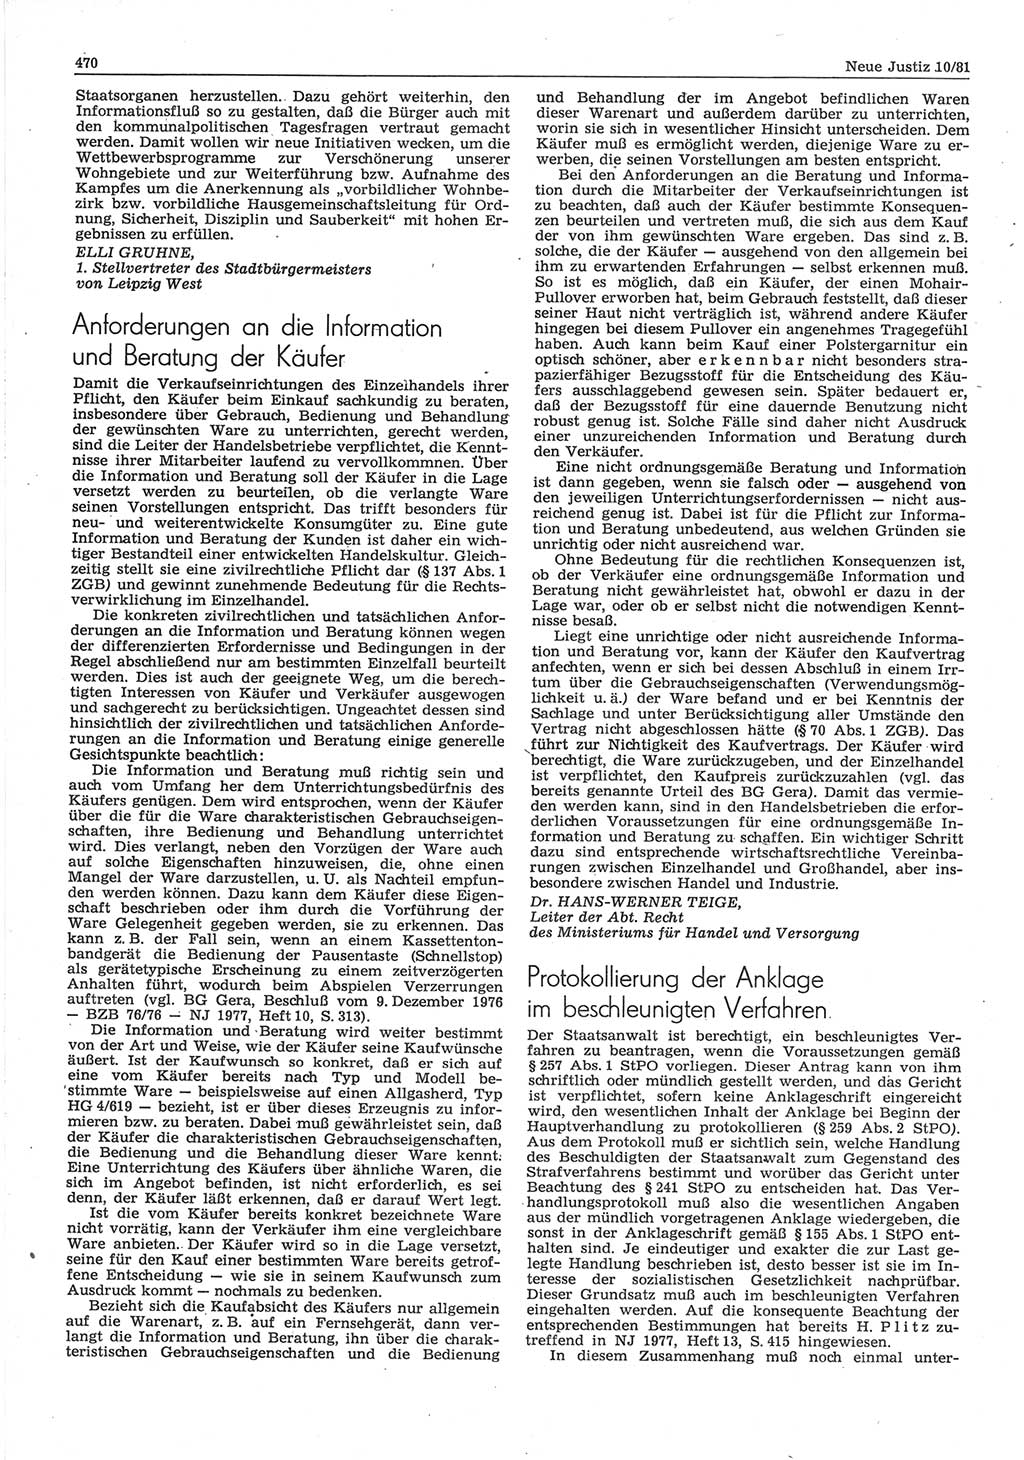 Neue Justiz (NJ), Zeitschrift für sozialistisches Recht und Gesetzlichkeit [Deutsche Demokratische Republik (DDR)], 35. Jahrgang 1981, Seite 470 (NJ DDR 1981, S. 470)